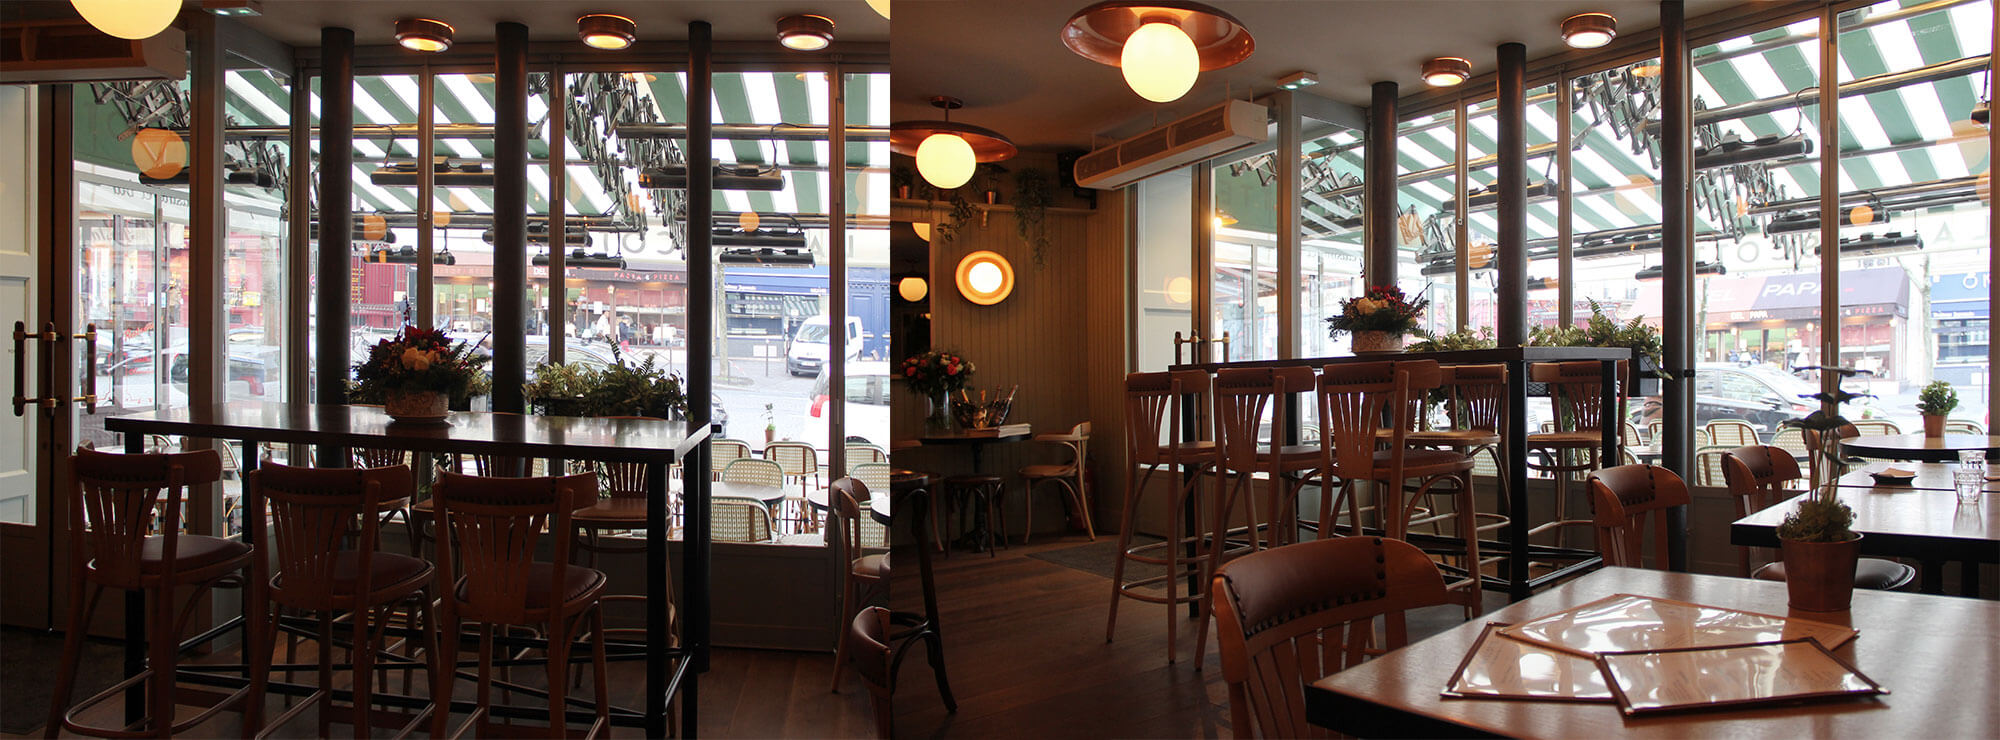 07.lamascotte interieur cafe bar restaurant.jpg